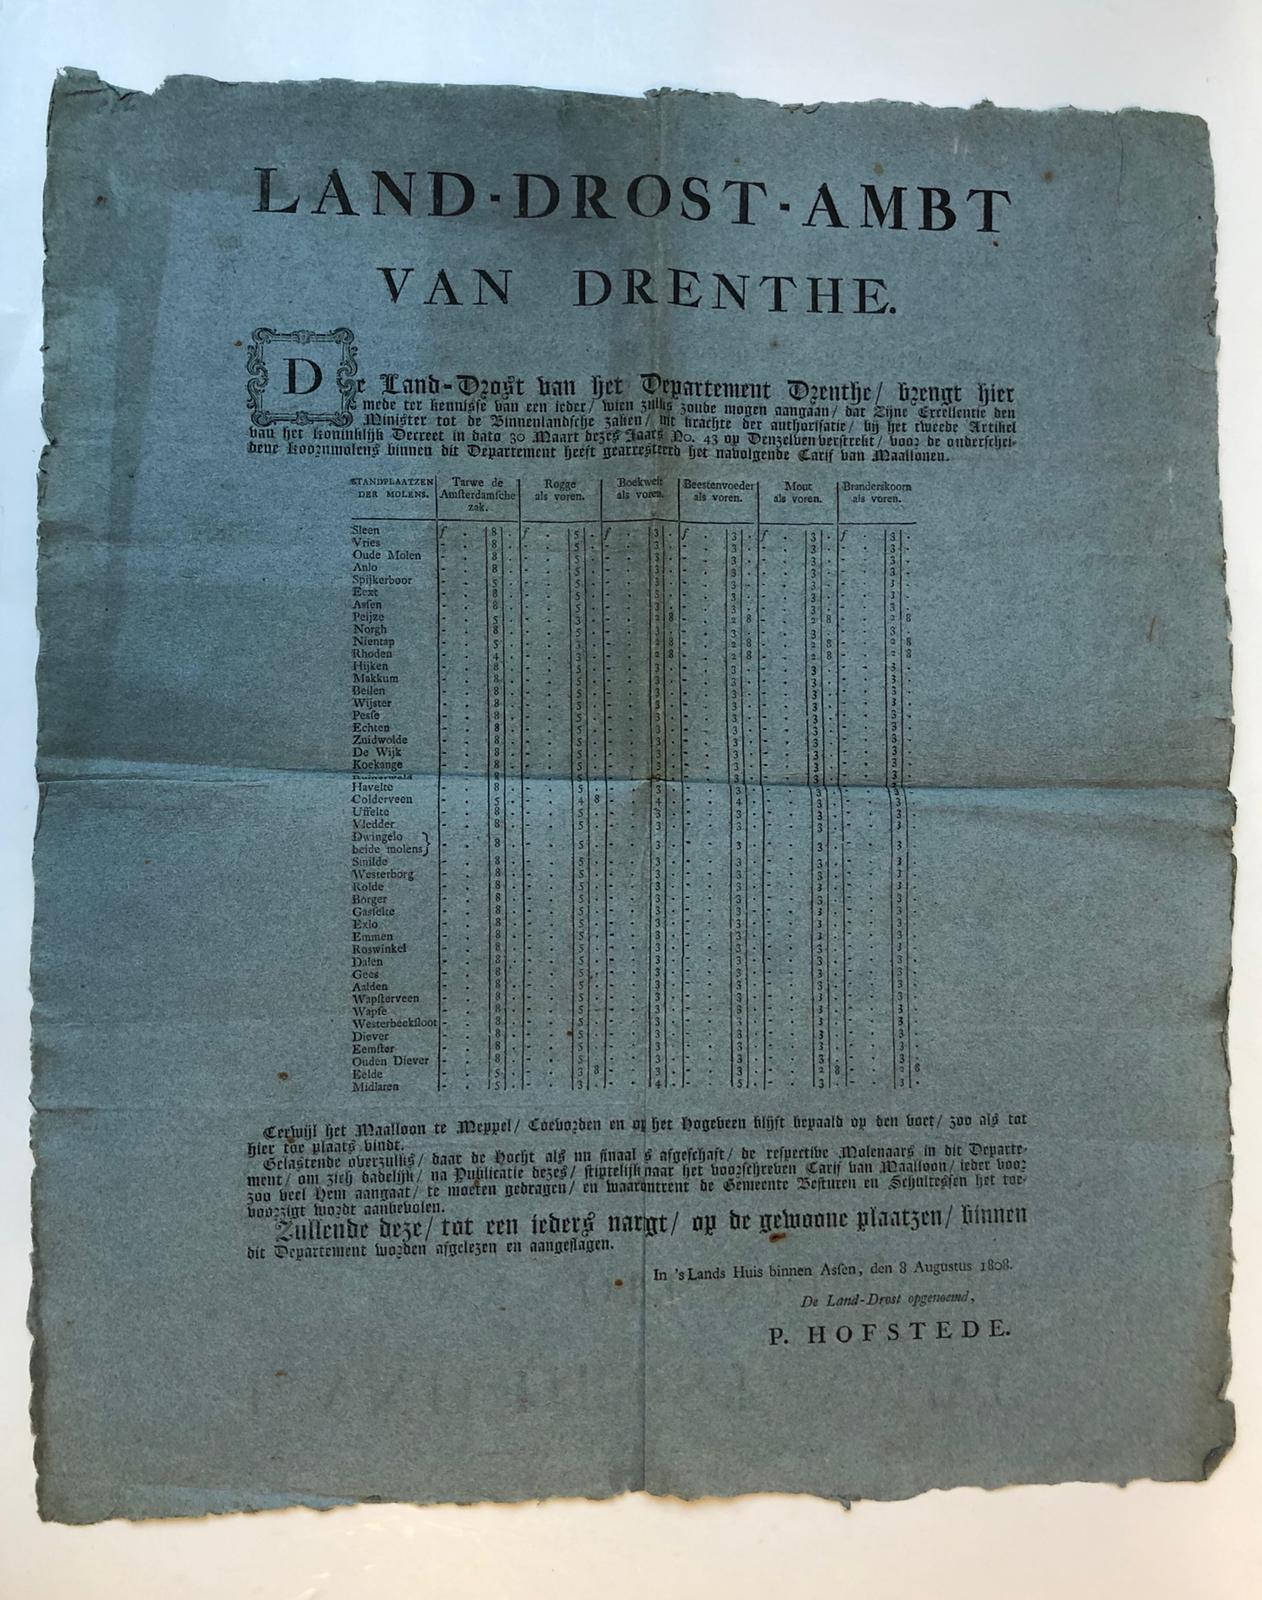  - DRENTHE, KORENMOLENS Proclamatie van de landdrost van Drenthe, P. Hofstede, d.d. Assen 8-8-1808, waarbij de maallonen van de korenmolens in Drenthe werden vastgesteld. 1 blad, plano, gedrukt op blauw papier.